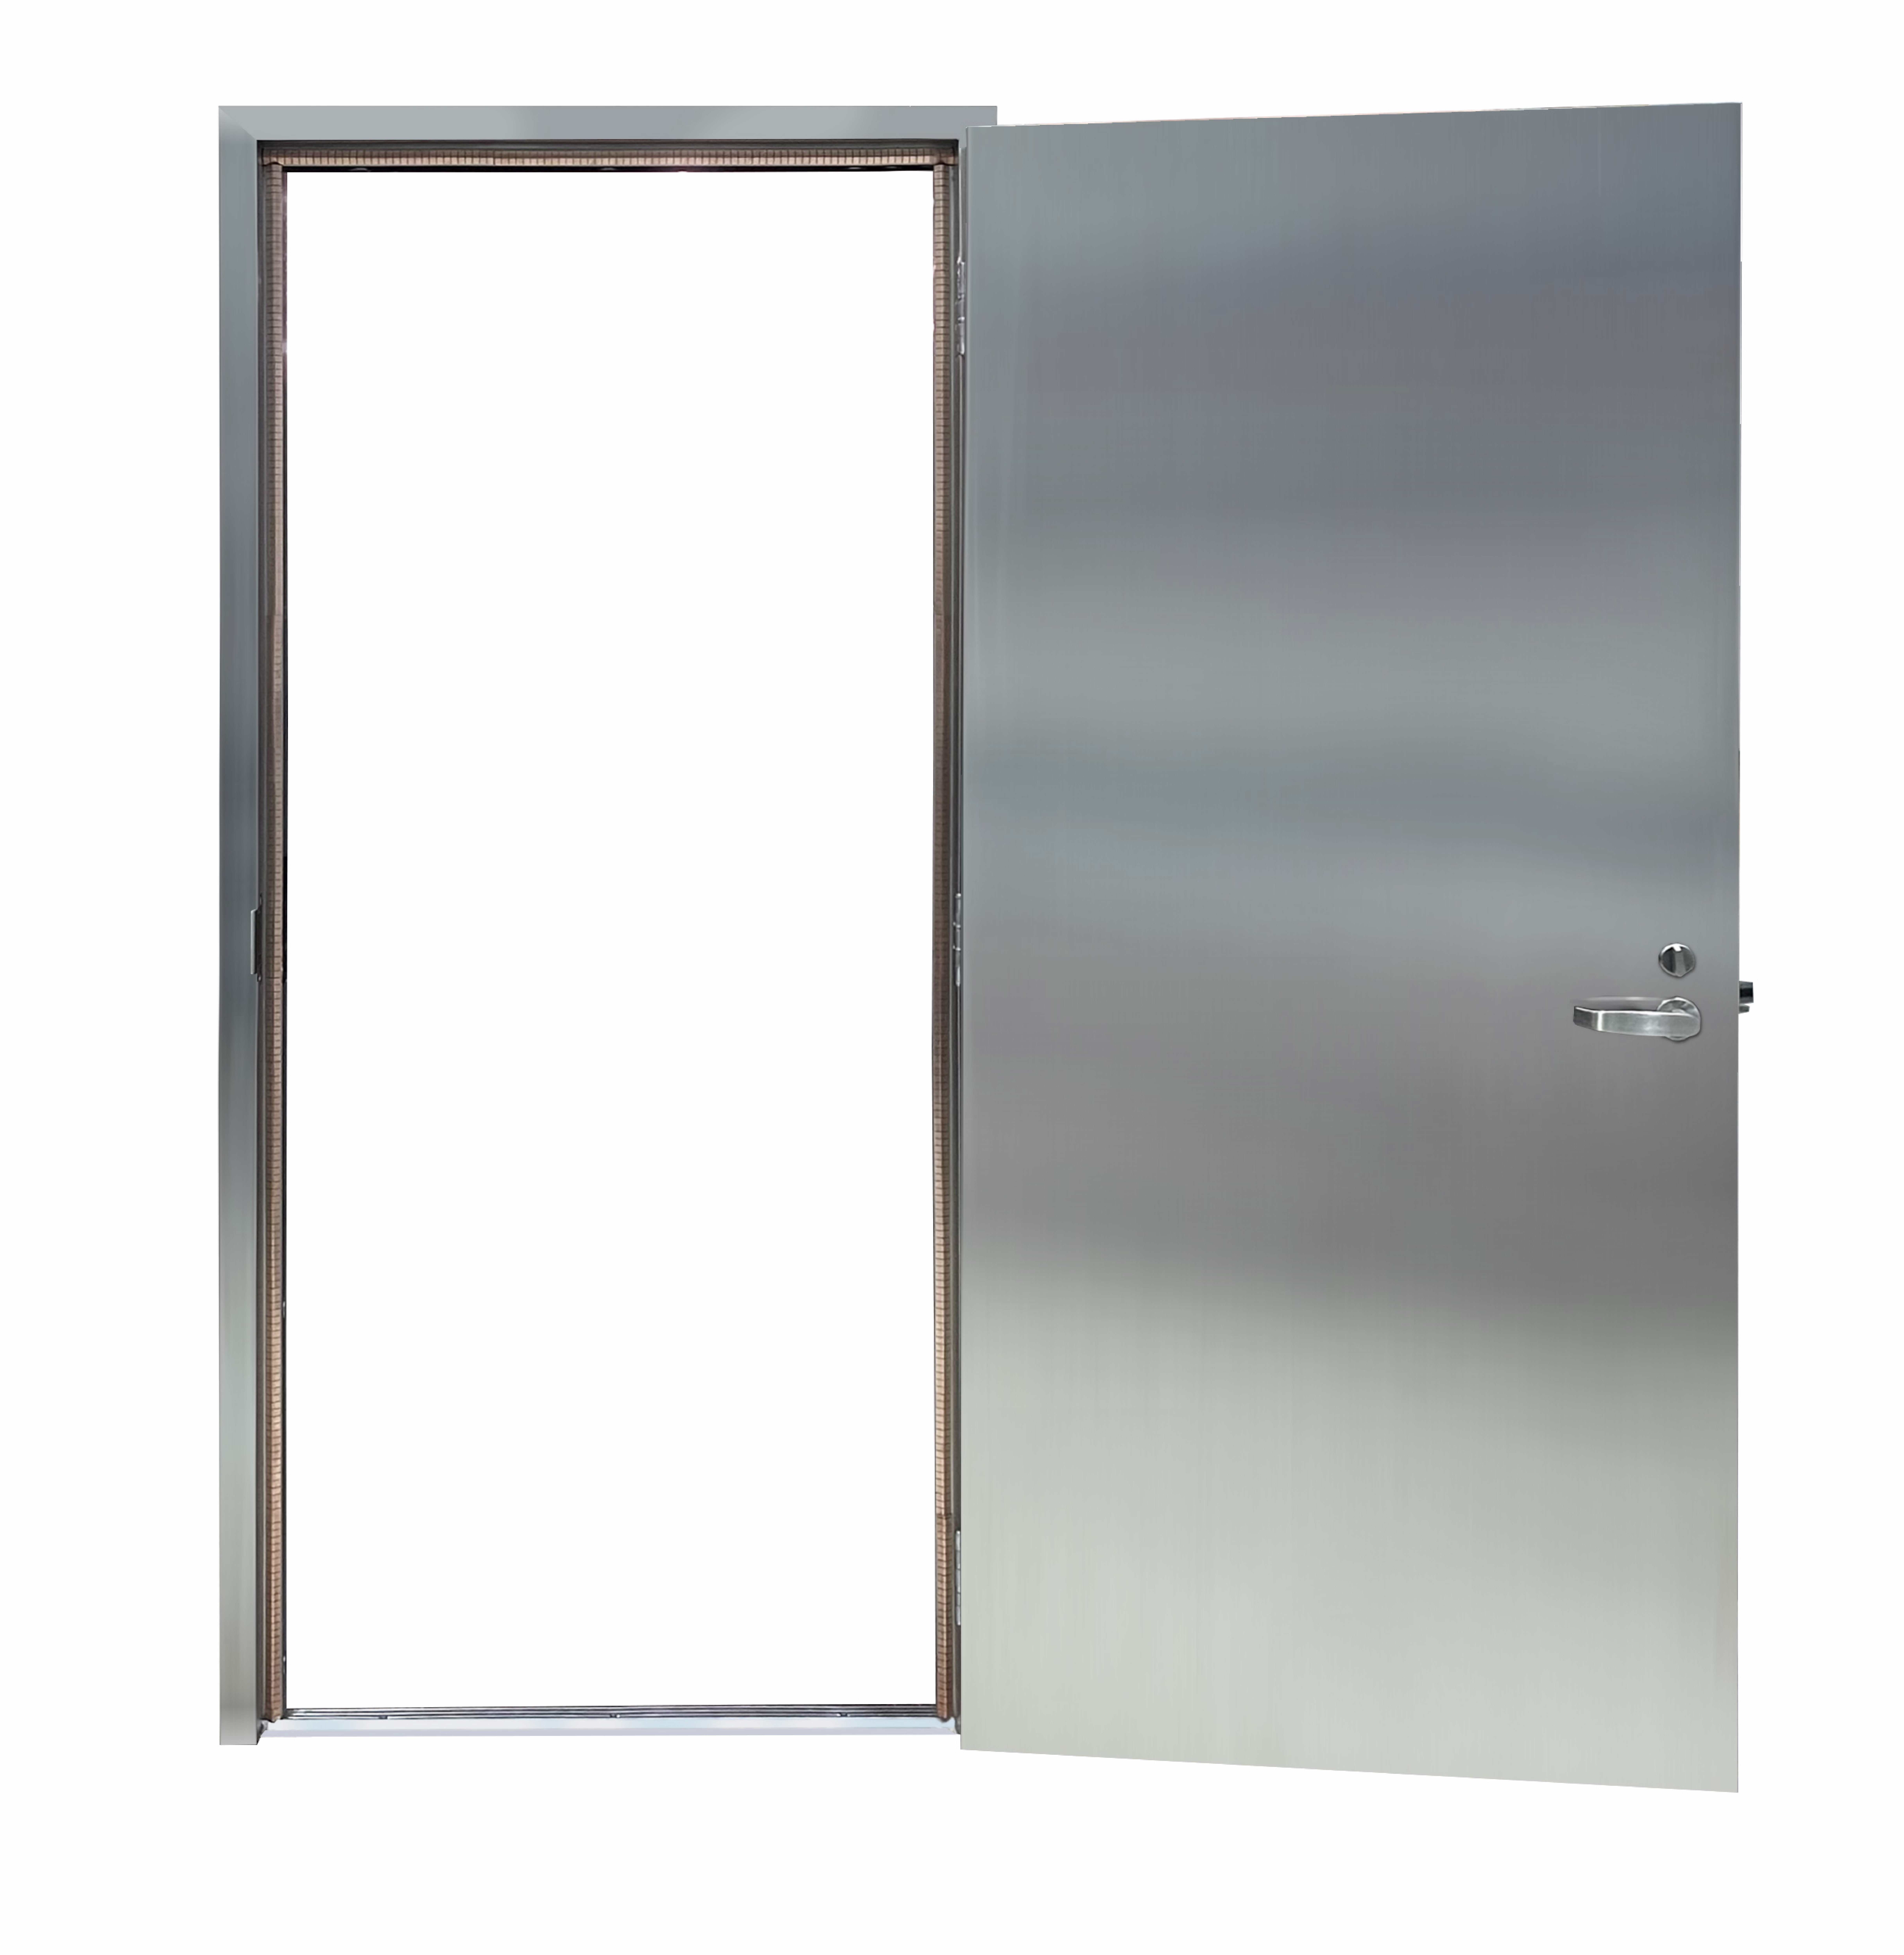 image of Ceco Door's Stainless Steel EMI shield